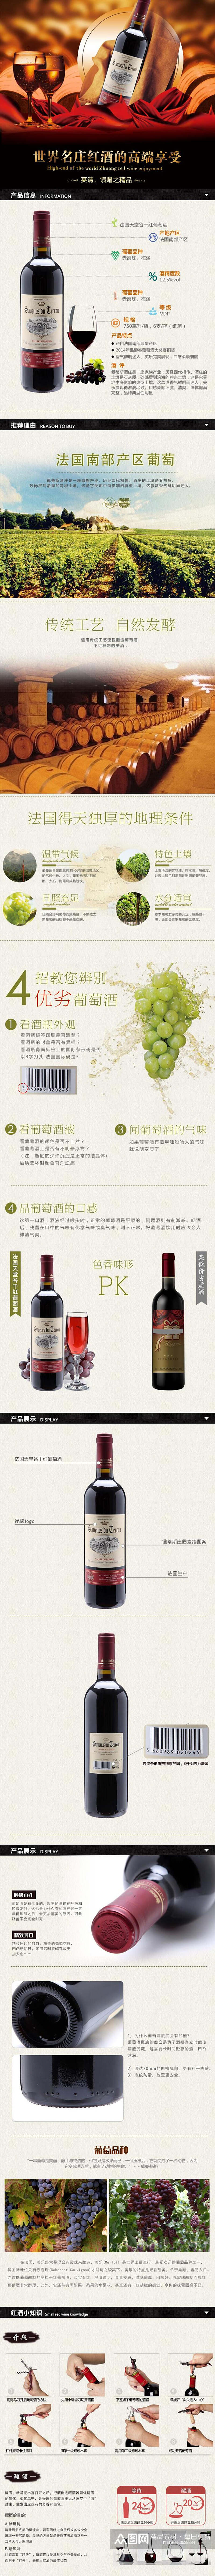 世界名庄红酒高端享受馈赠之精品酒类电商详情页素材